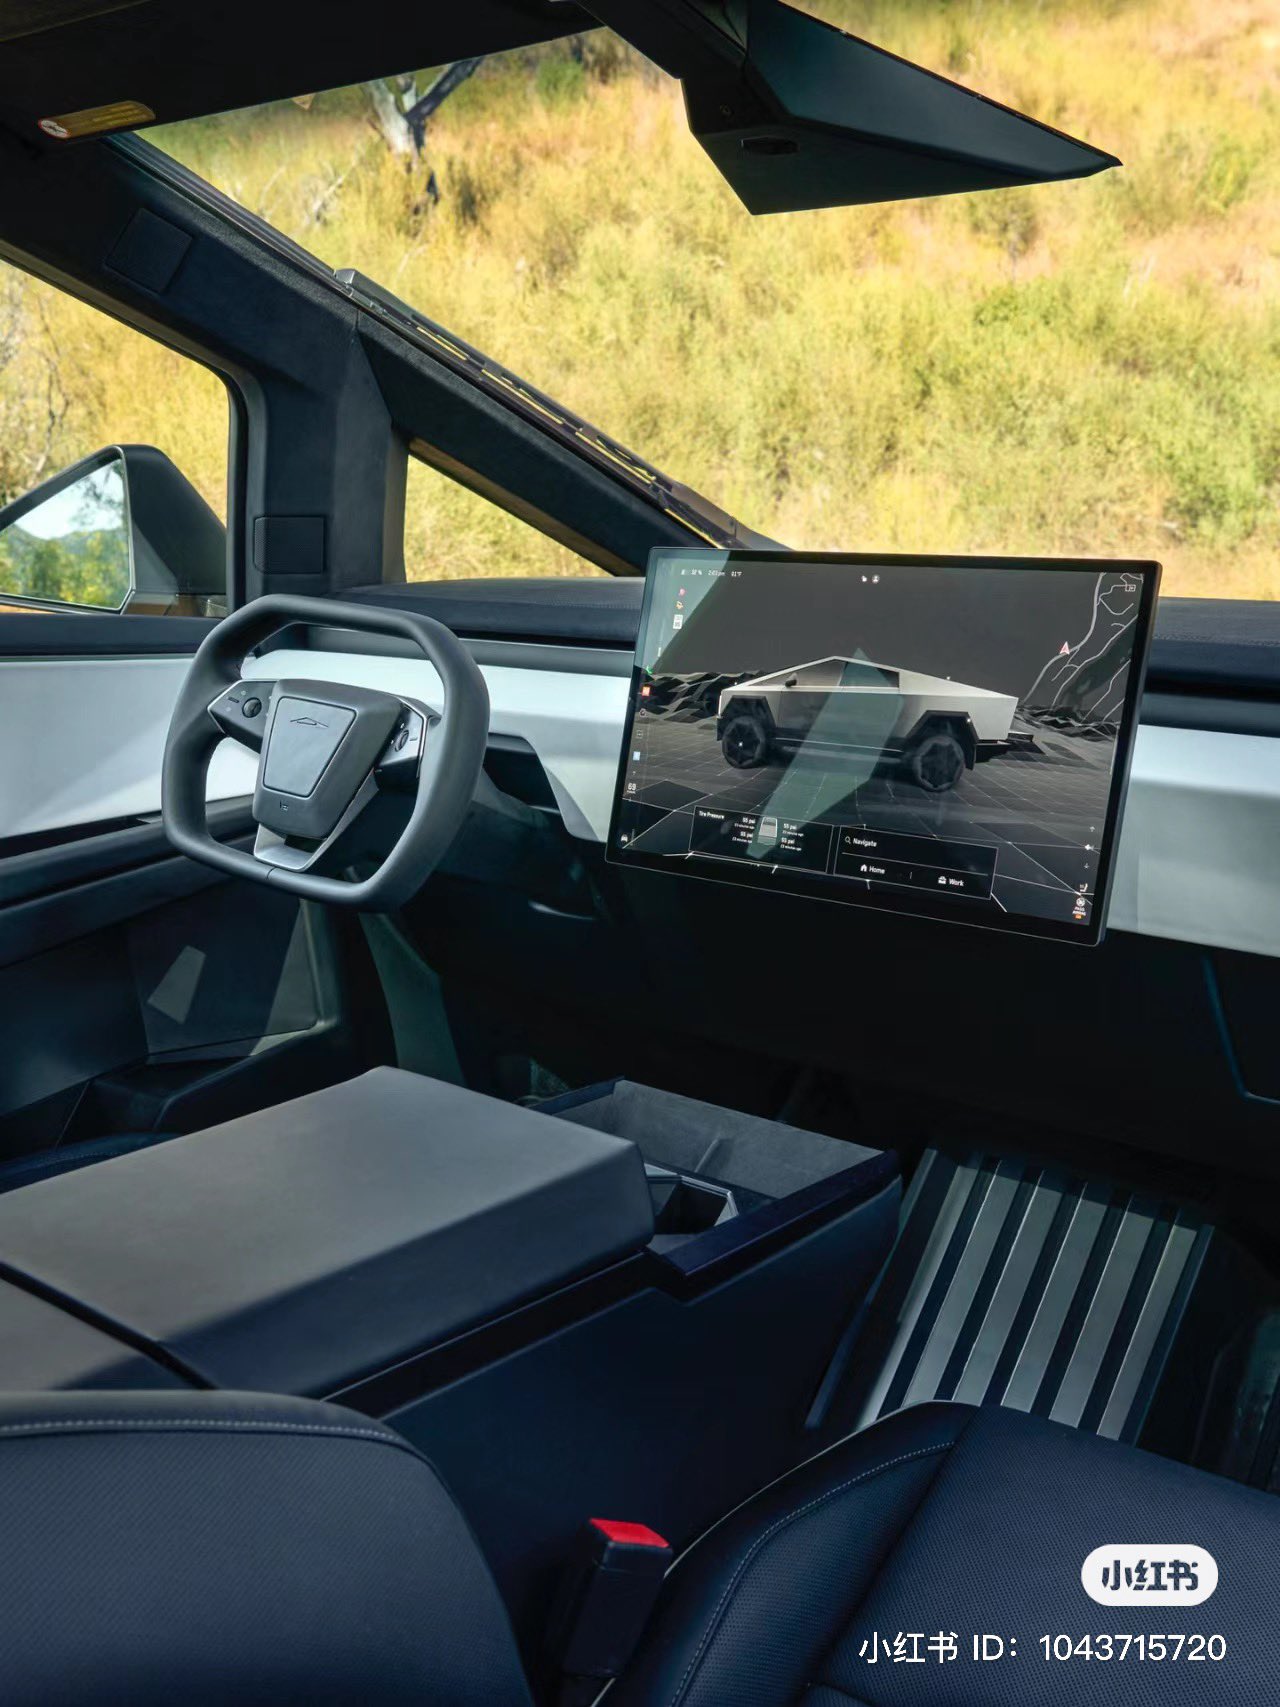 Visão do interior da Picape Tesla Cybertruck.